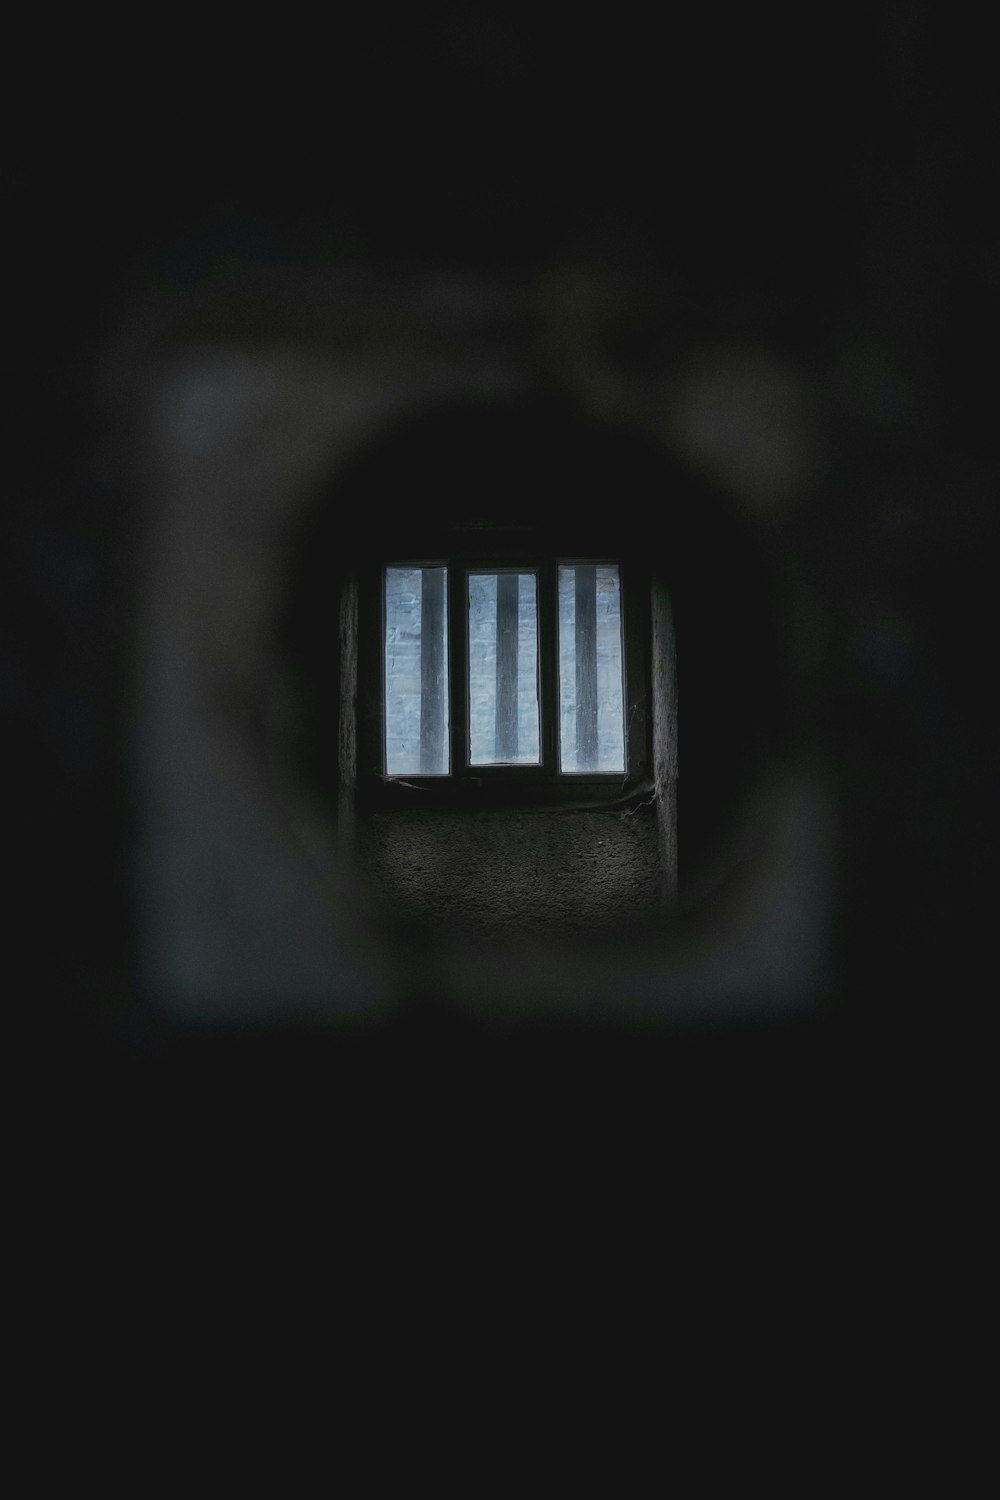 Ein dunkler Tunnel mit Gitterstäben darin